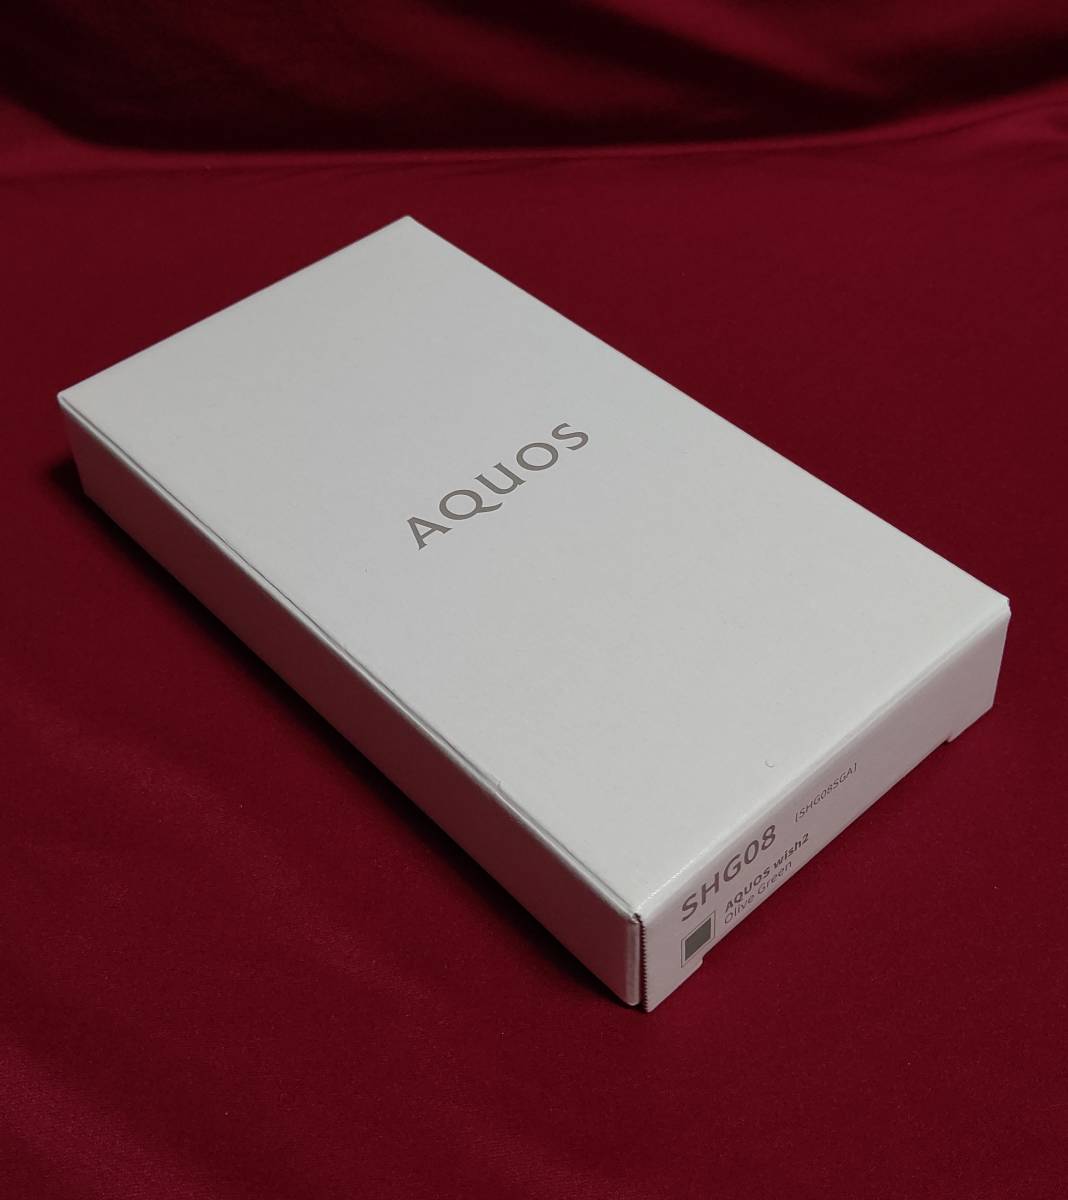 【未開封・新品未使用】 AQUOS wish2 オリーブグリーン SHG08 SIMフリー スマートフォン 本体 Android